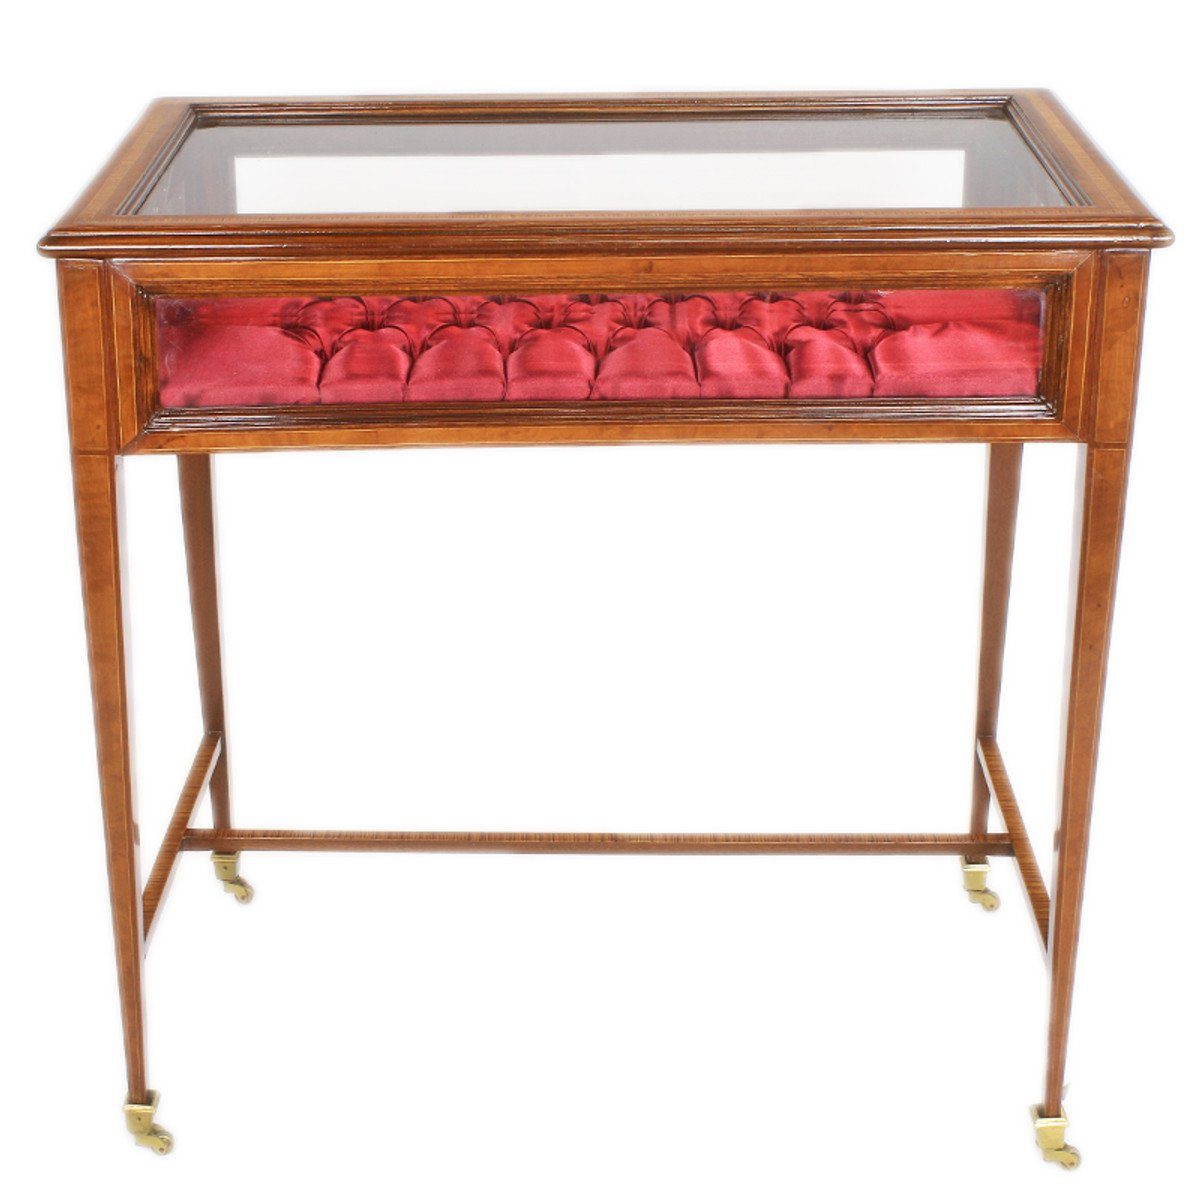 Casa Padrino Beistelltisch Barock Vitrinen Schaukasten Tisch mit aufklappbarem Deckel 80 x50 x H80 cm - Beistelltisch | Ablagetische